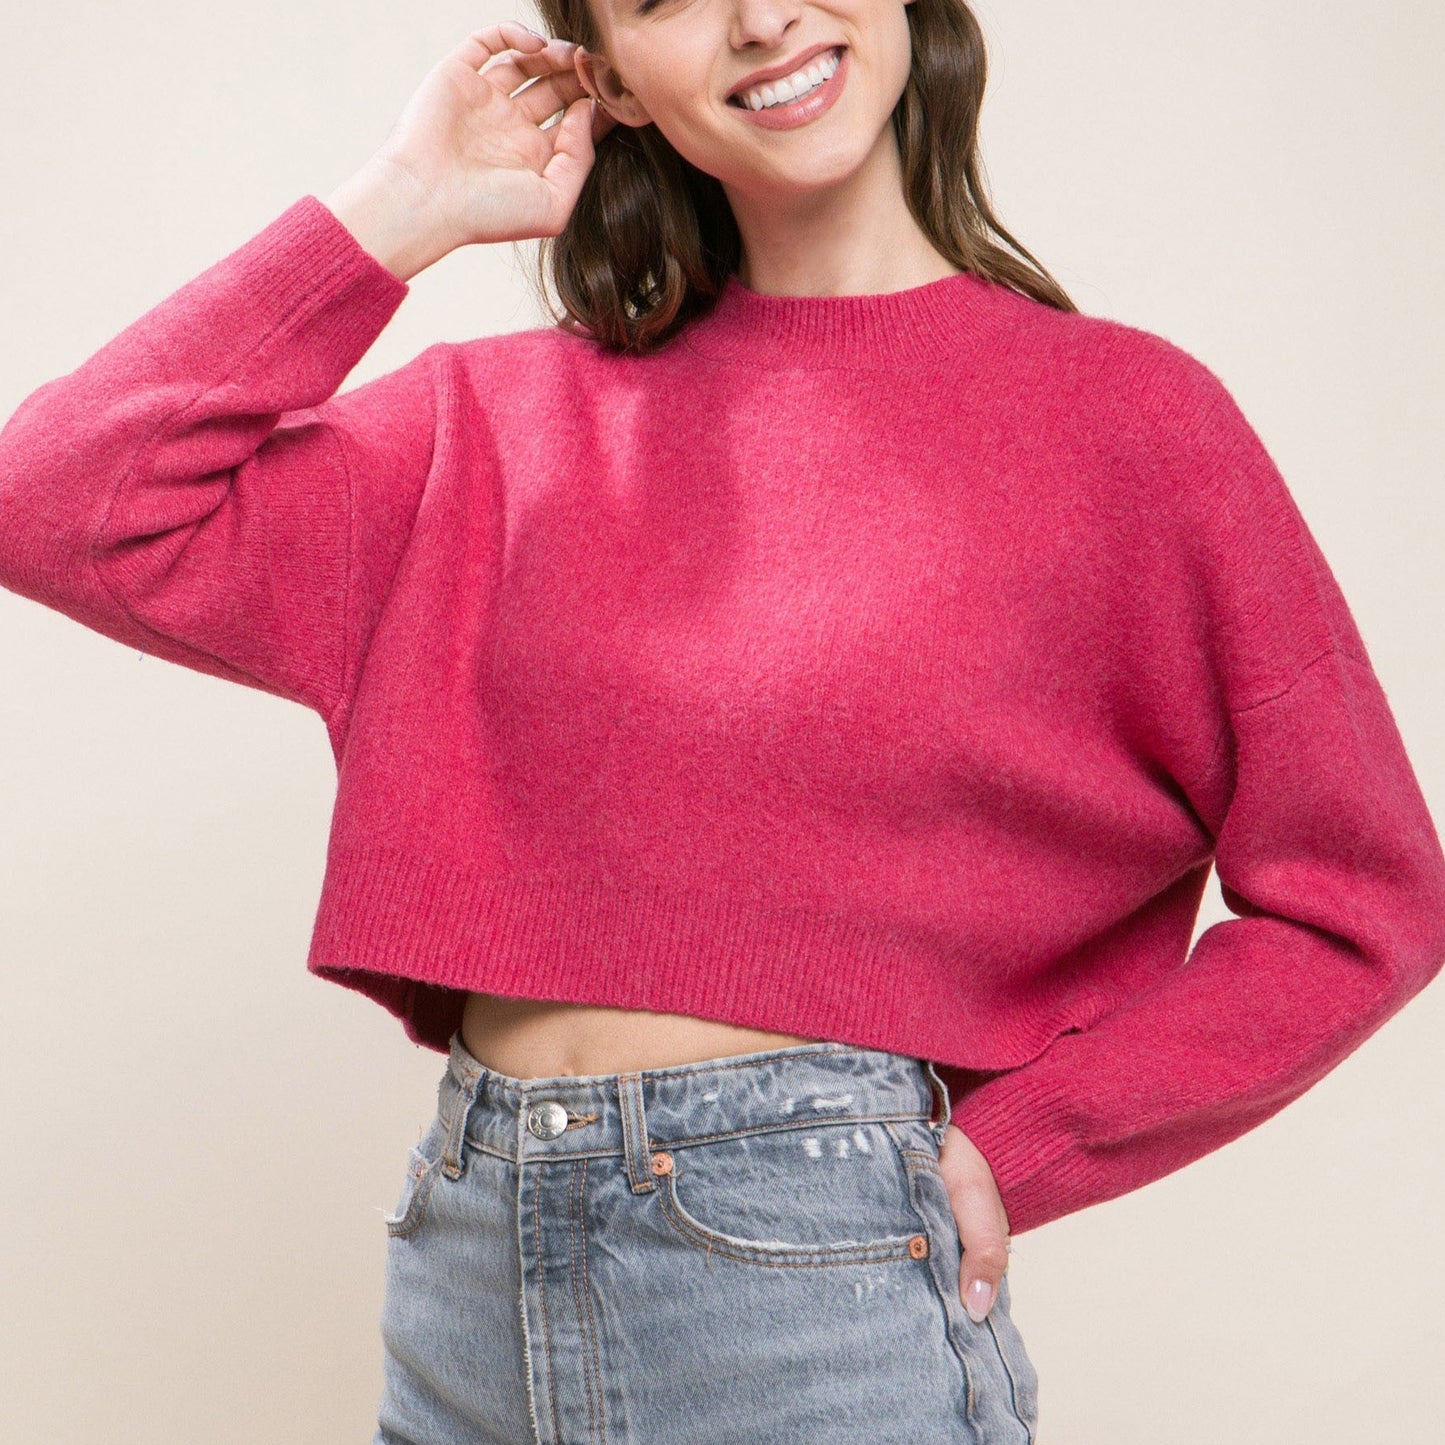 Wallen Cropped Sweater